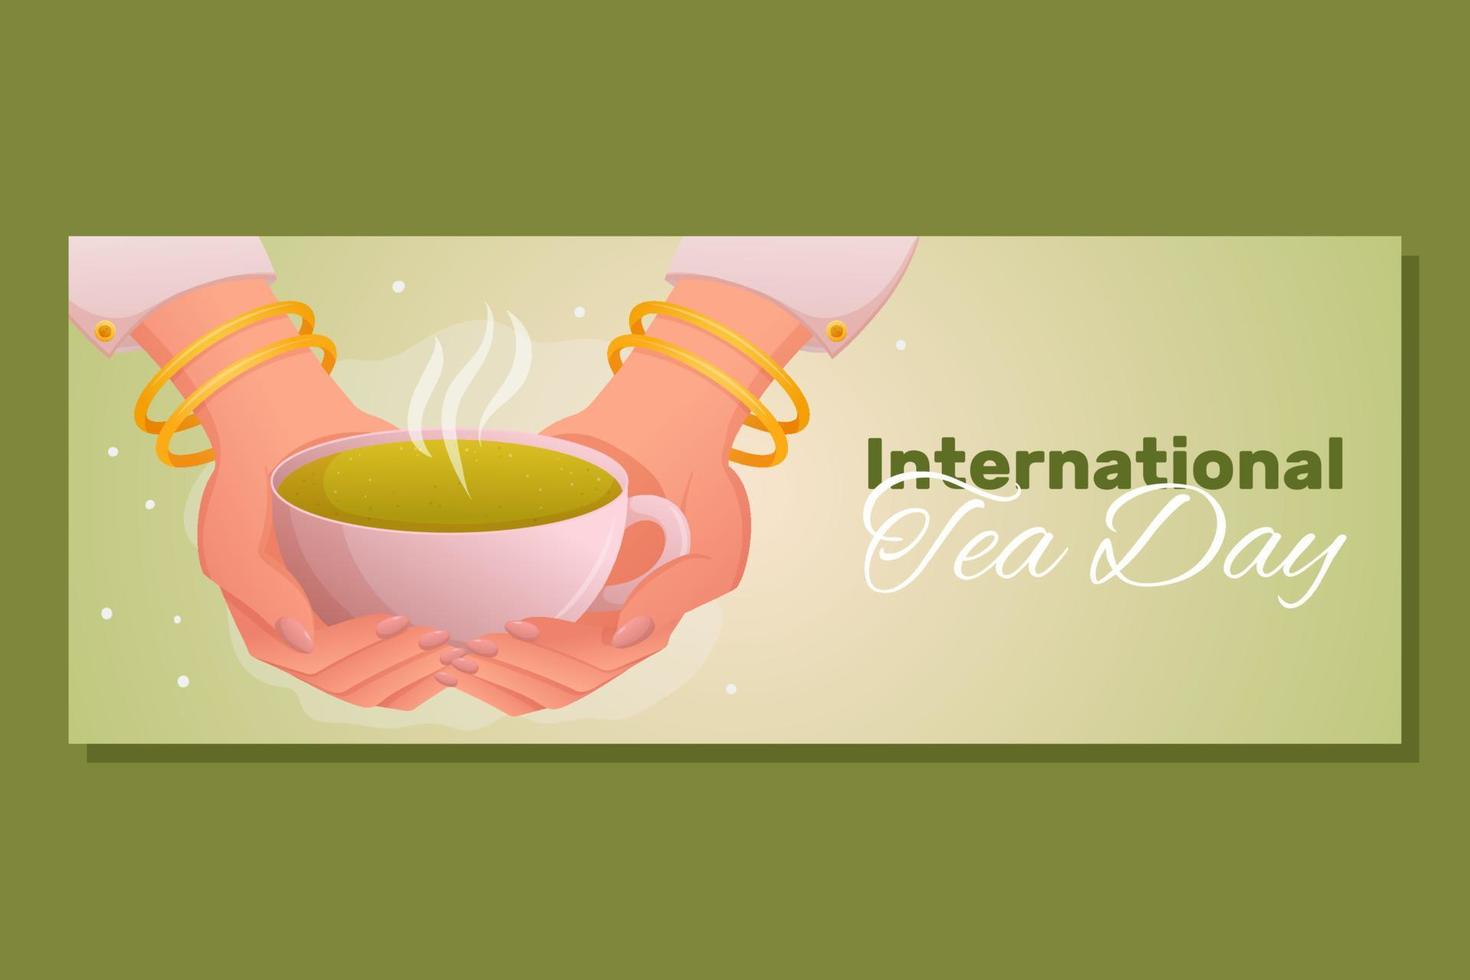 día internacional del té 21 de mayo o 15 de diciembre. mano de mujer sostenga una taza con té verde. plantilla de banner horizontal para medios sociales, sitio web vector